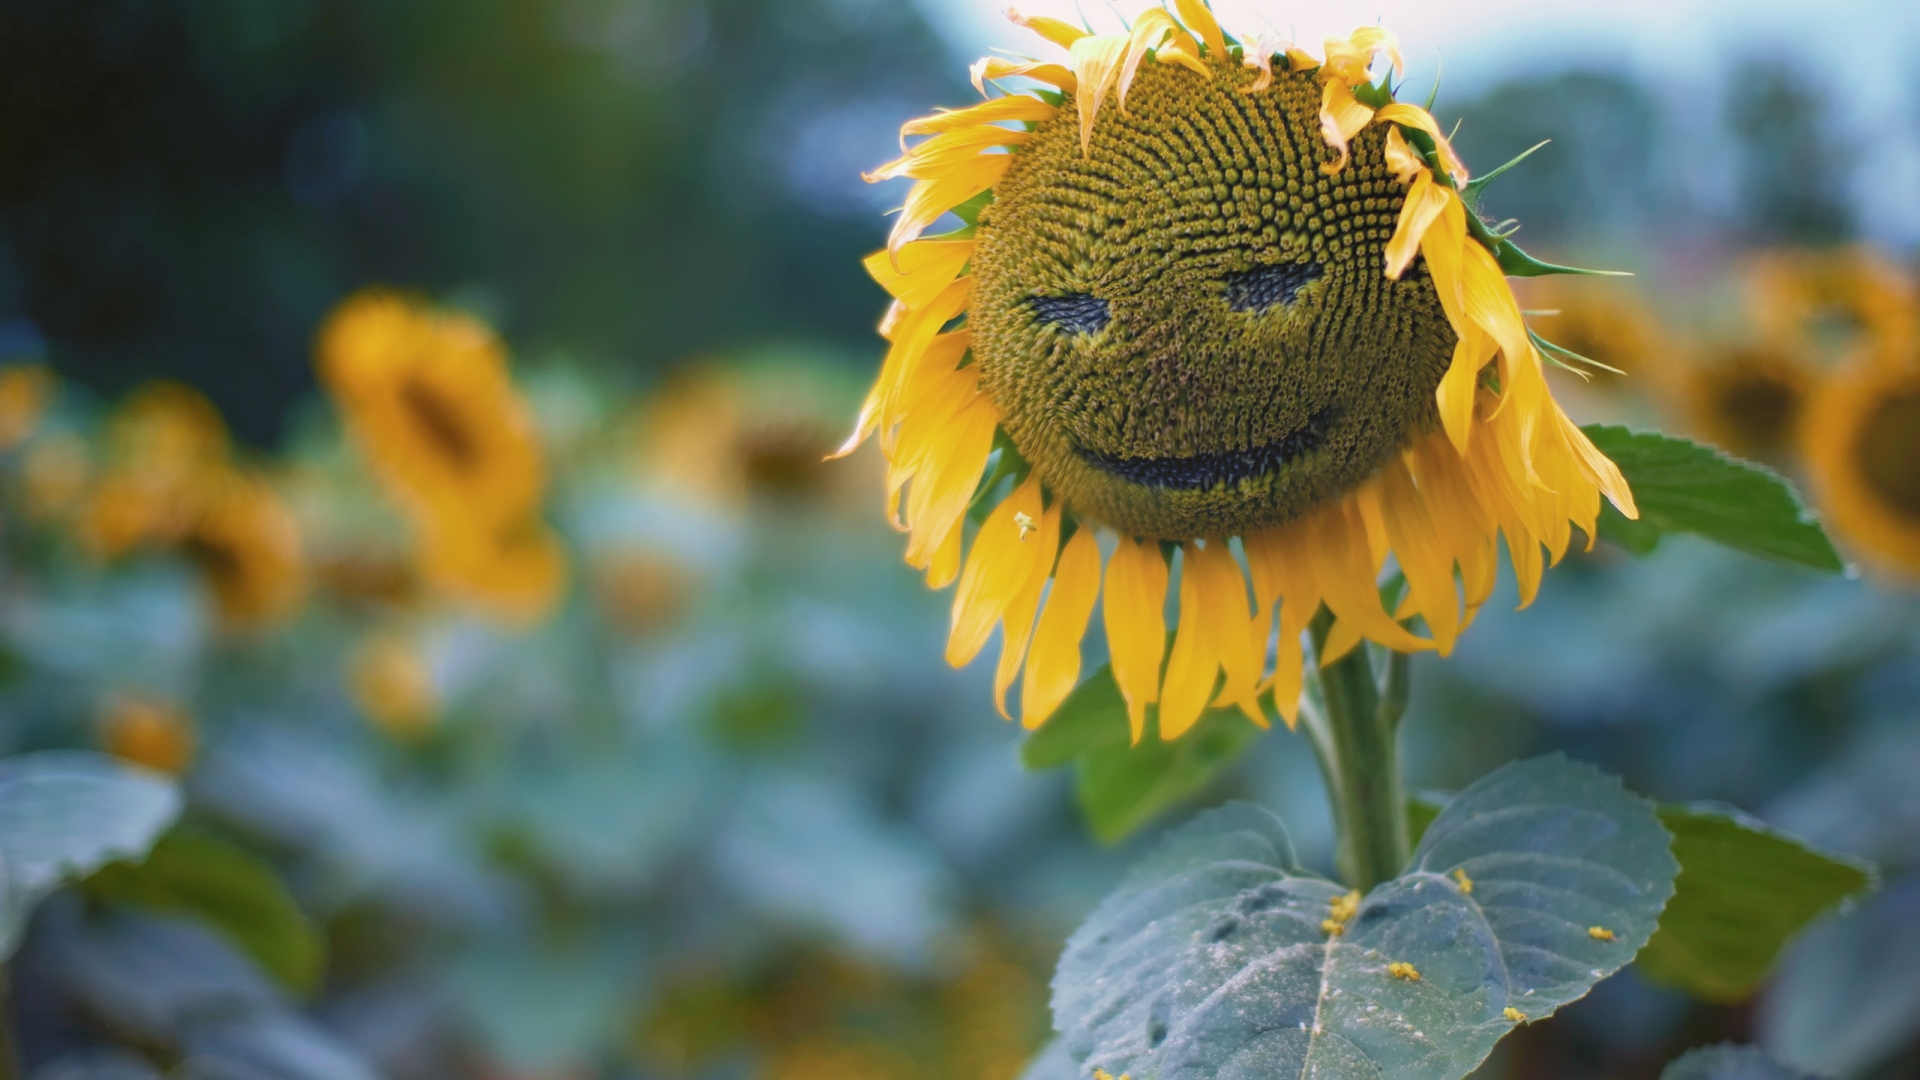 Sun Flower Face for 1920 x 1080 HDTV 1080p resolution